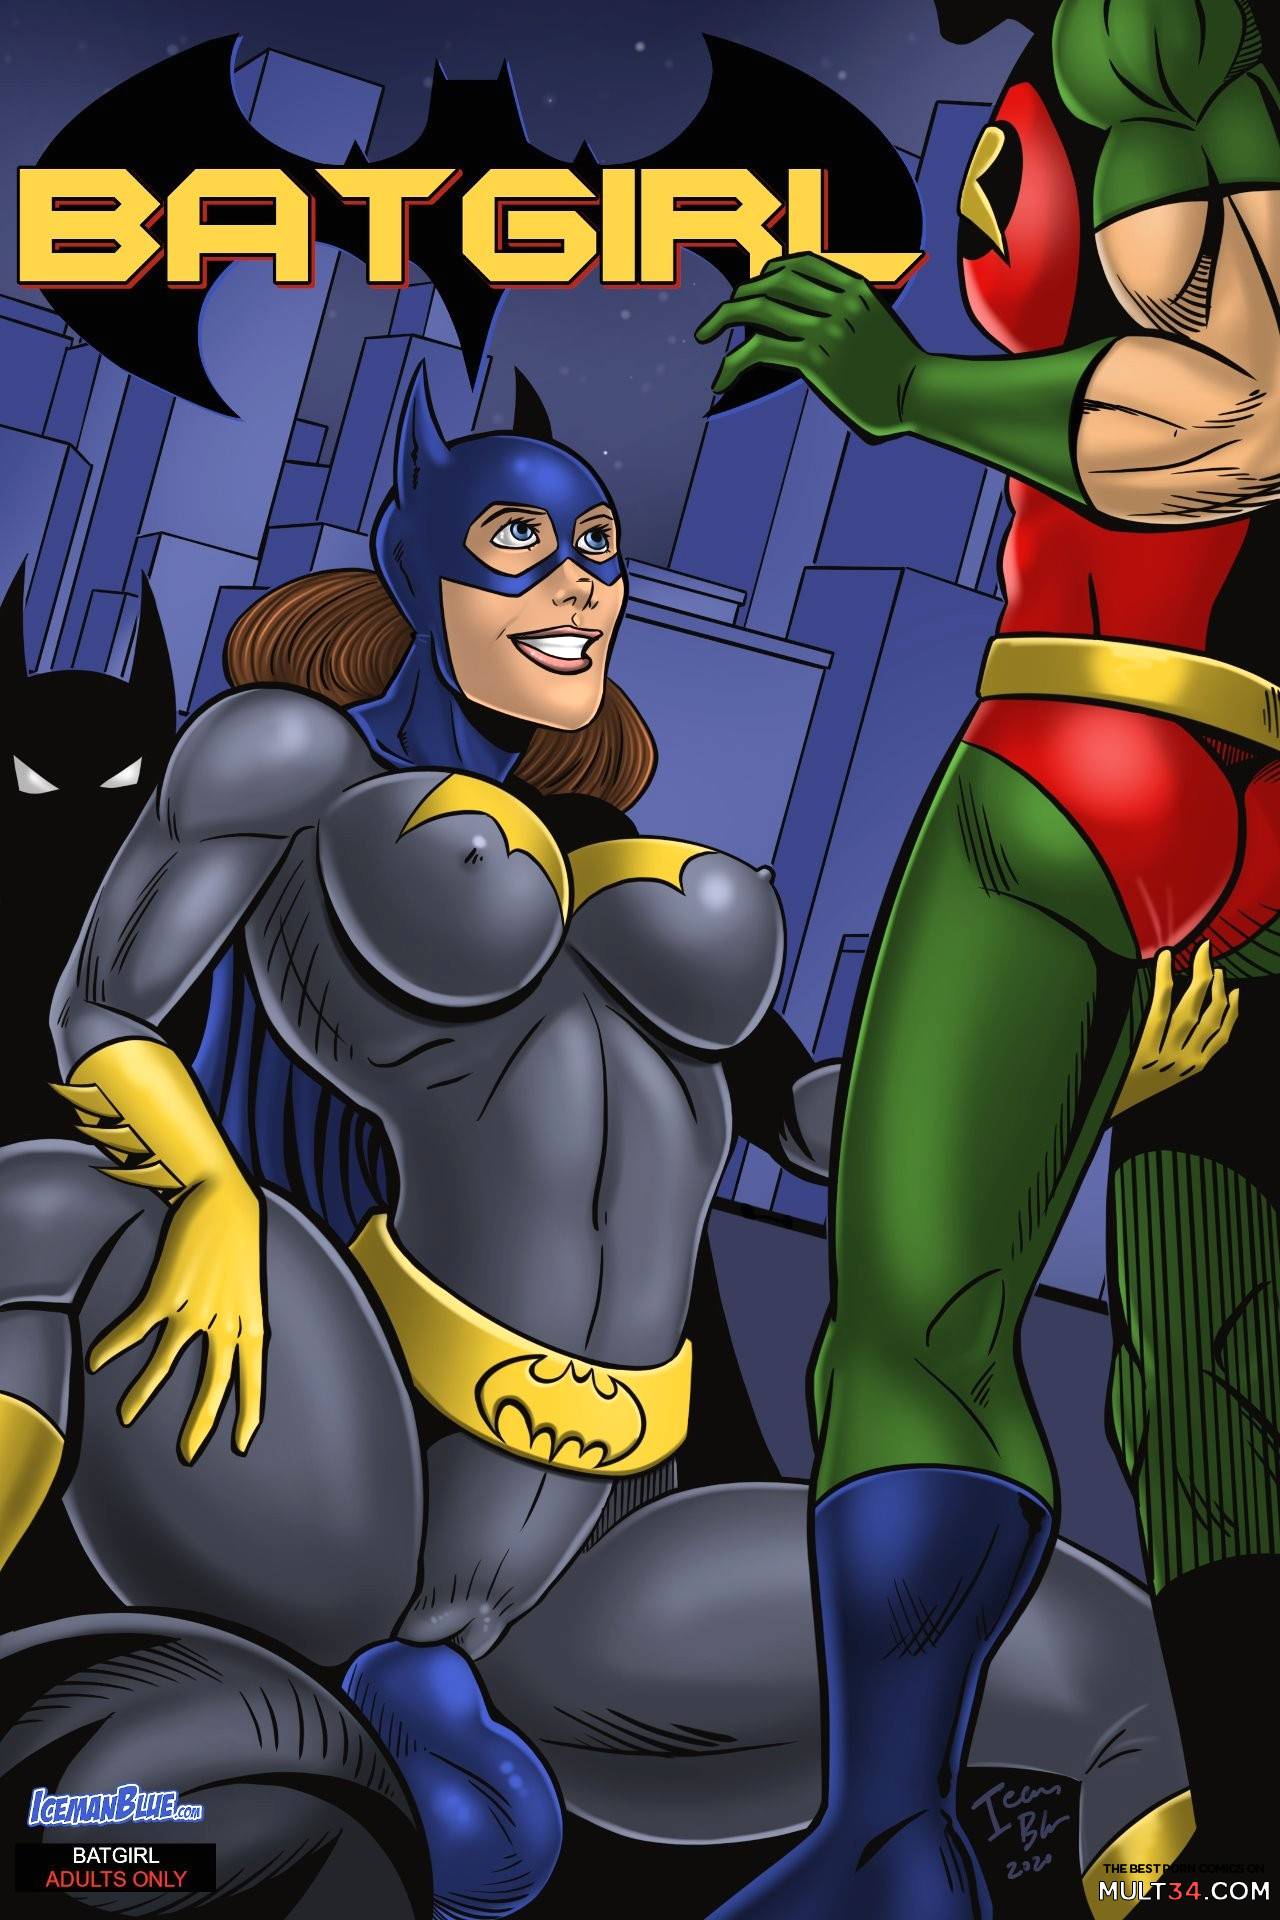 Robin And Batgirl Porn - Batgirl gay porn comic - the best cartoon porn comics, Rule 34 | MULT34